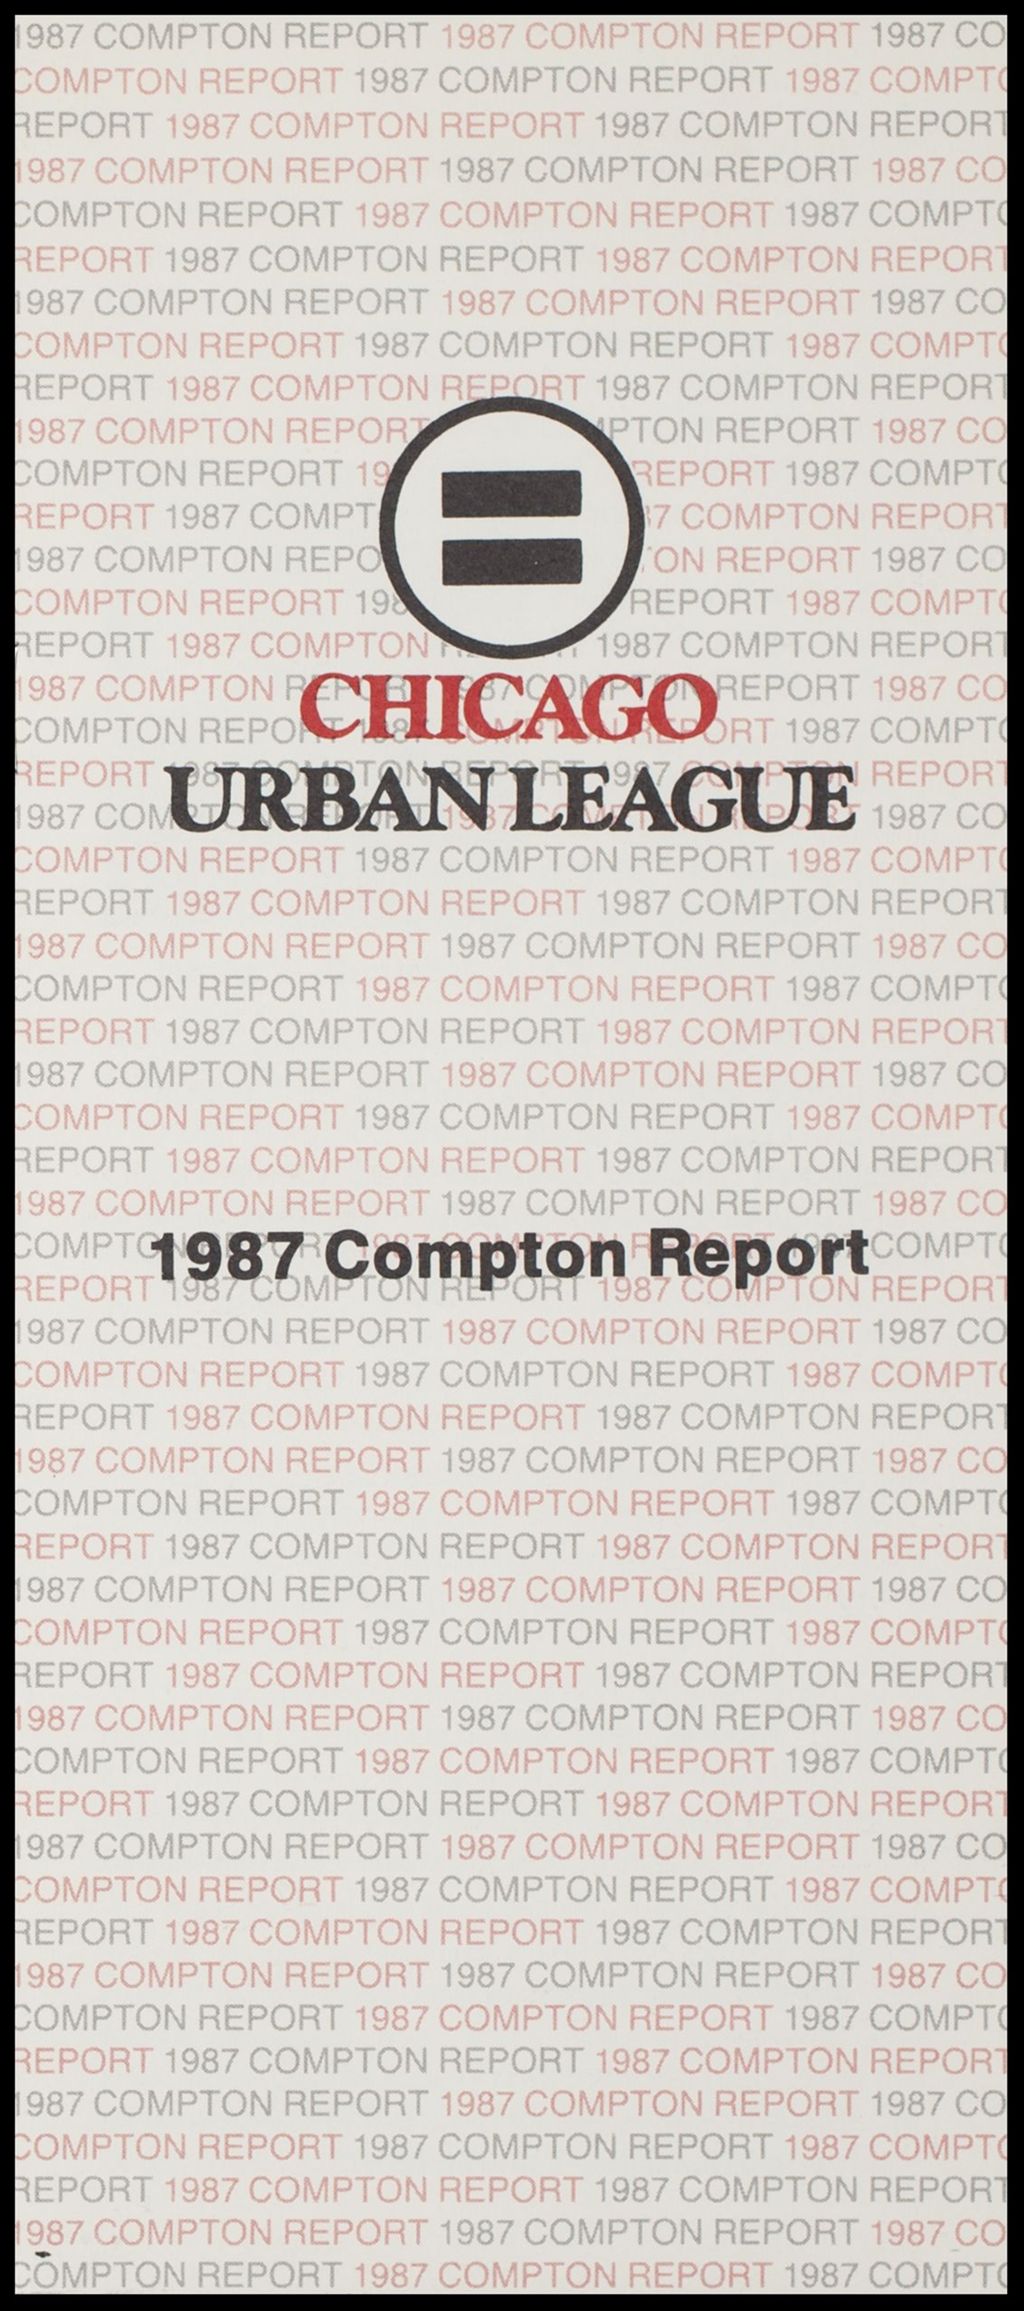 Miniature of CUL Compton Report Brochure, 1987 (Folder IV-748)